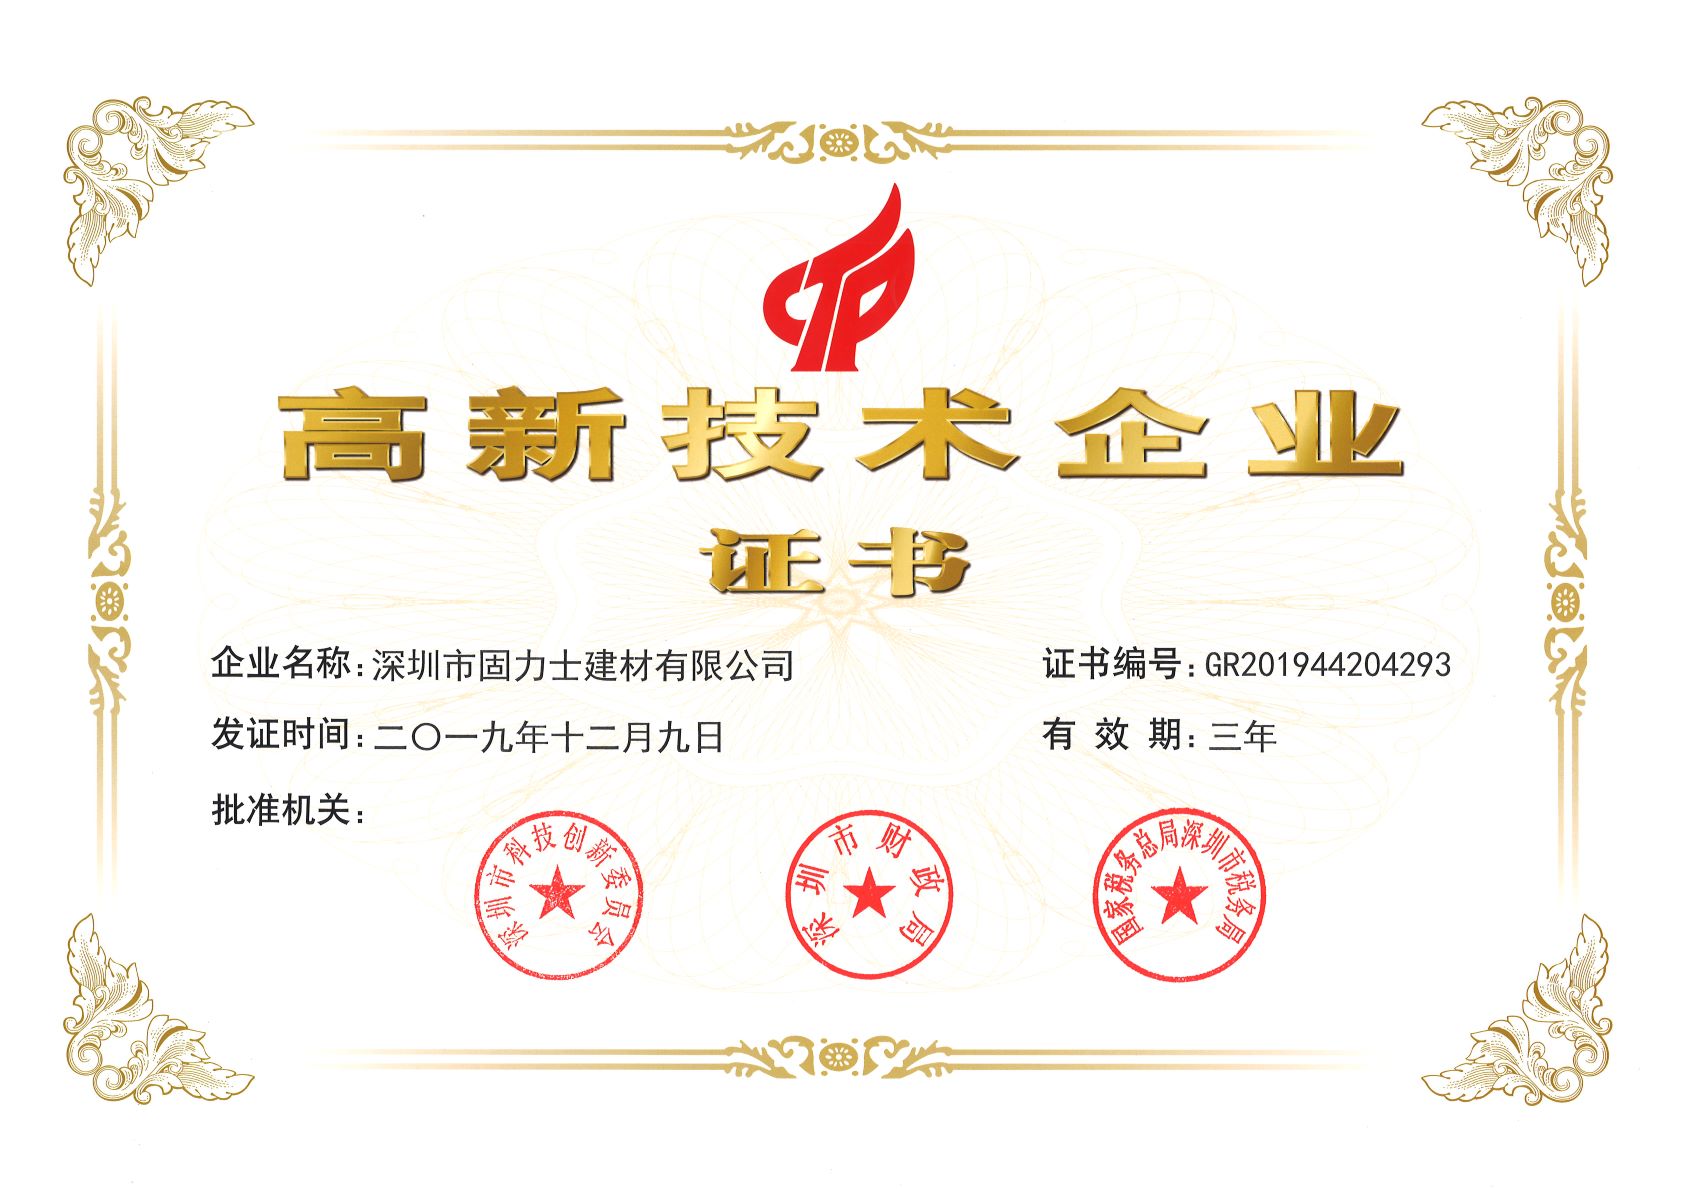 沙雅热烈祝贺深圳市固力士建材有限公司通过高新技术企业认证